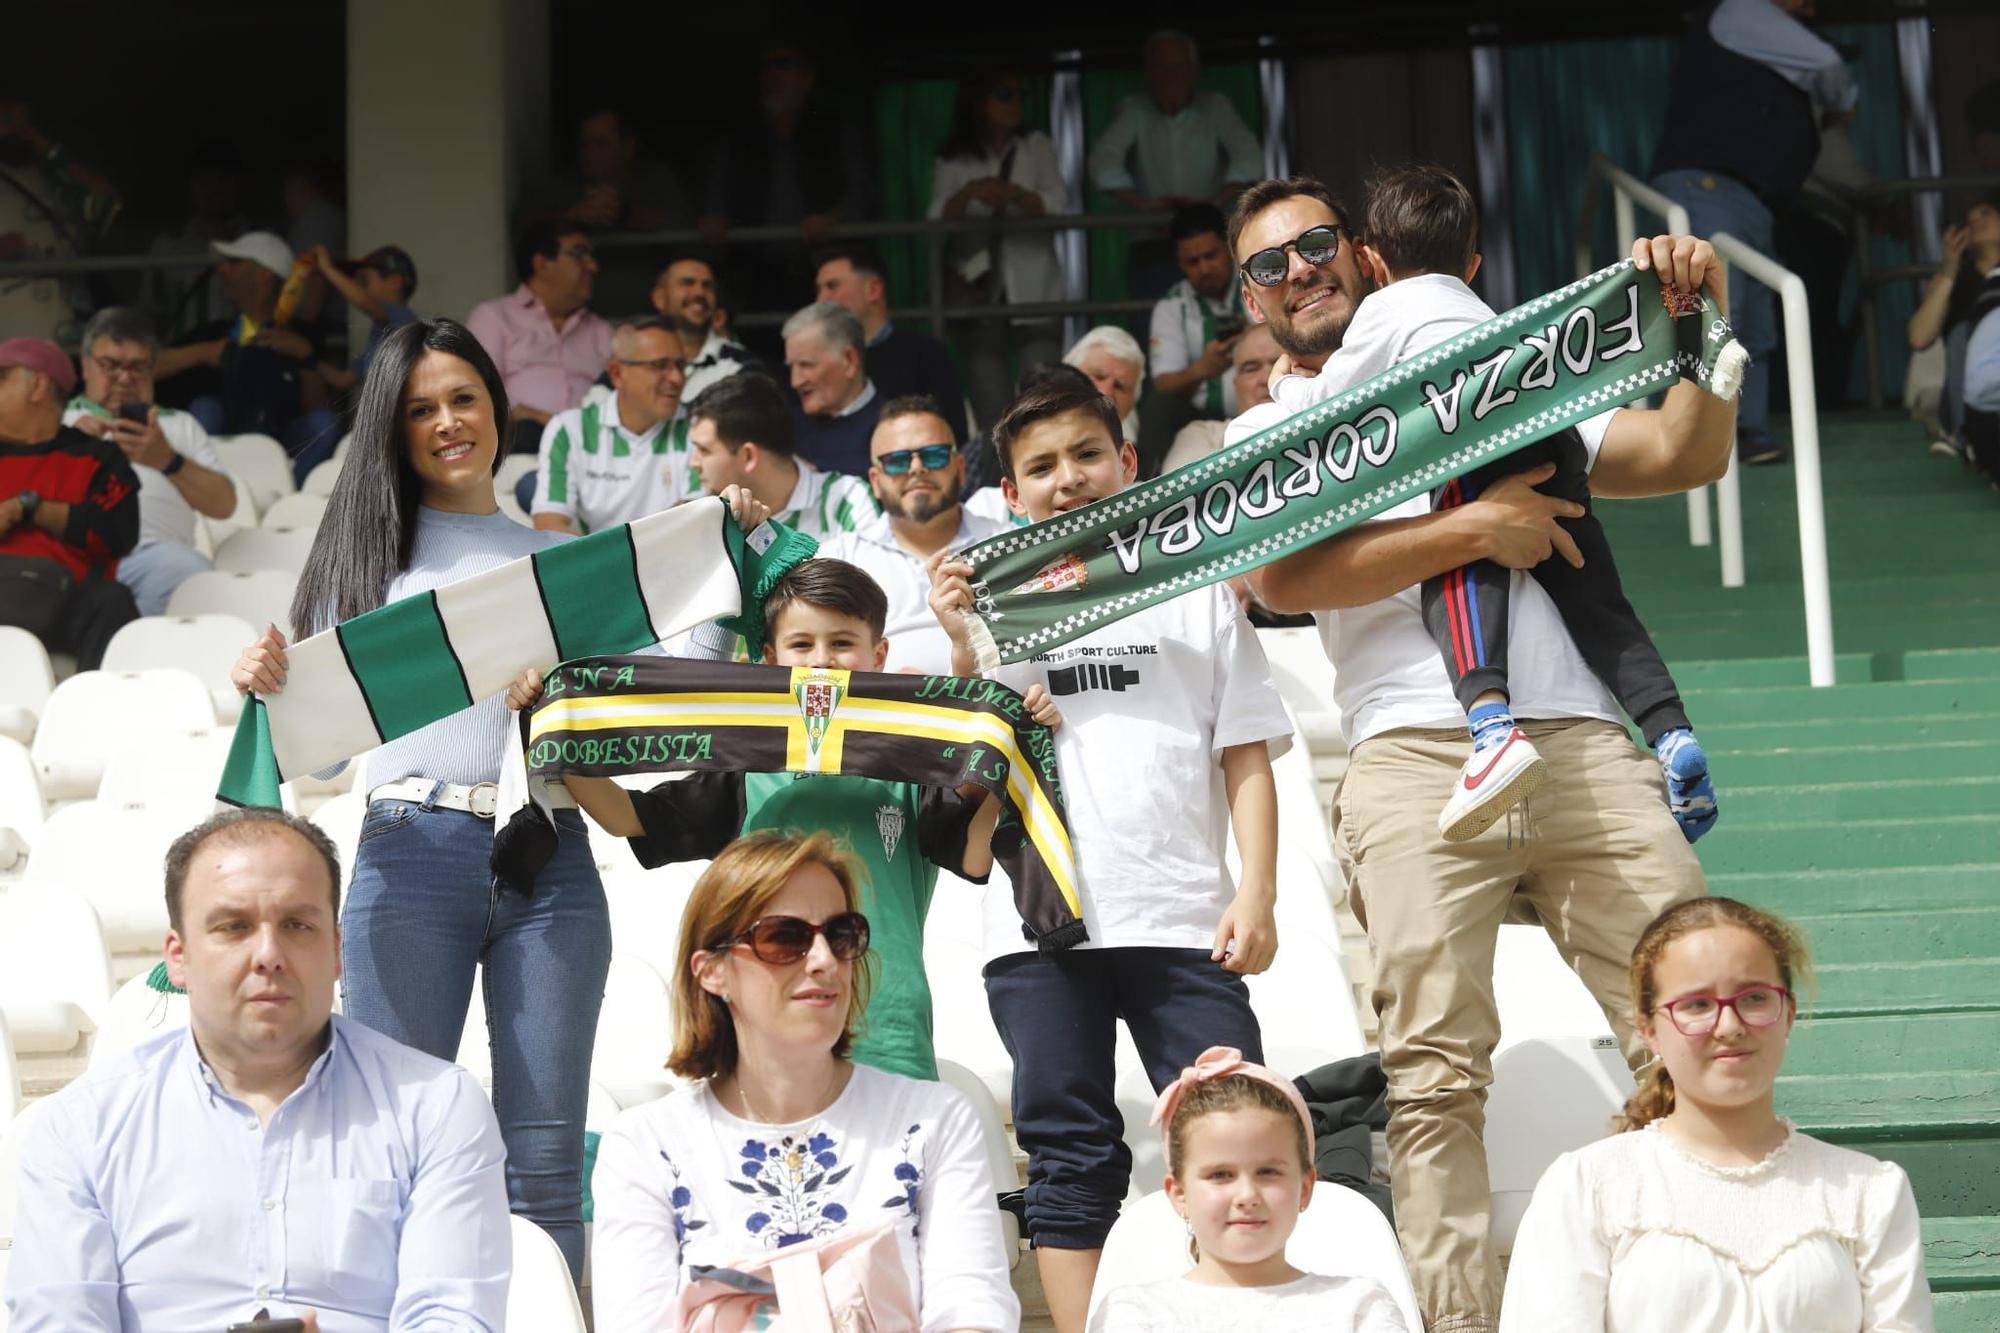 Córdoba CF-San Fernando: las imágenes de la afición en El Arcángel